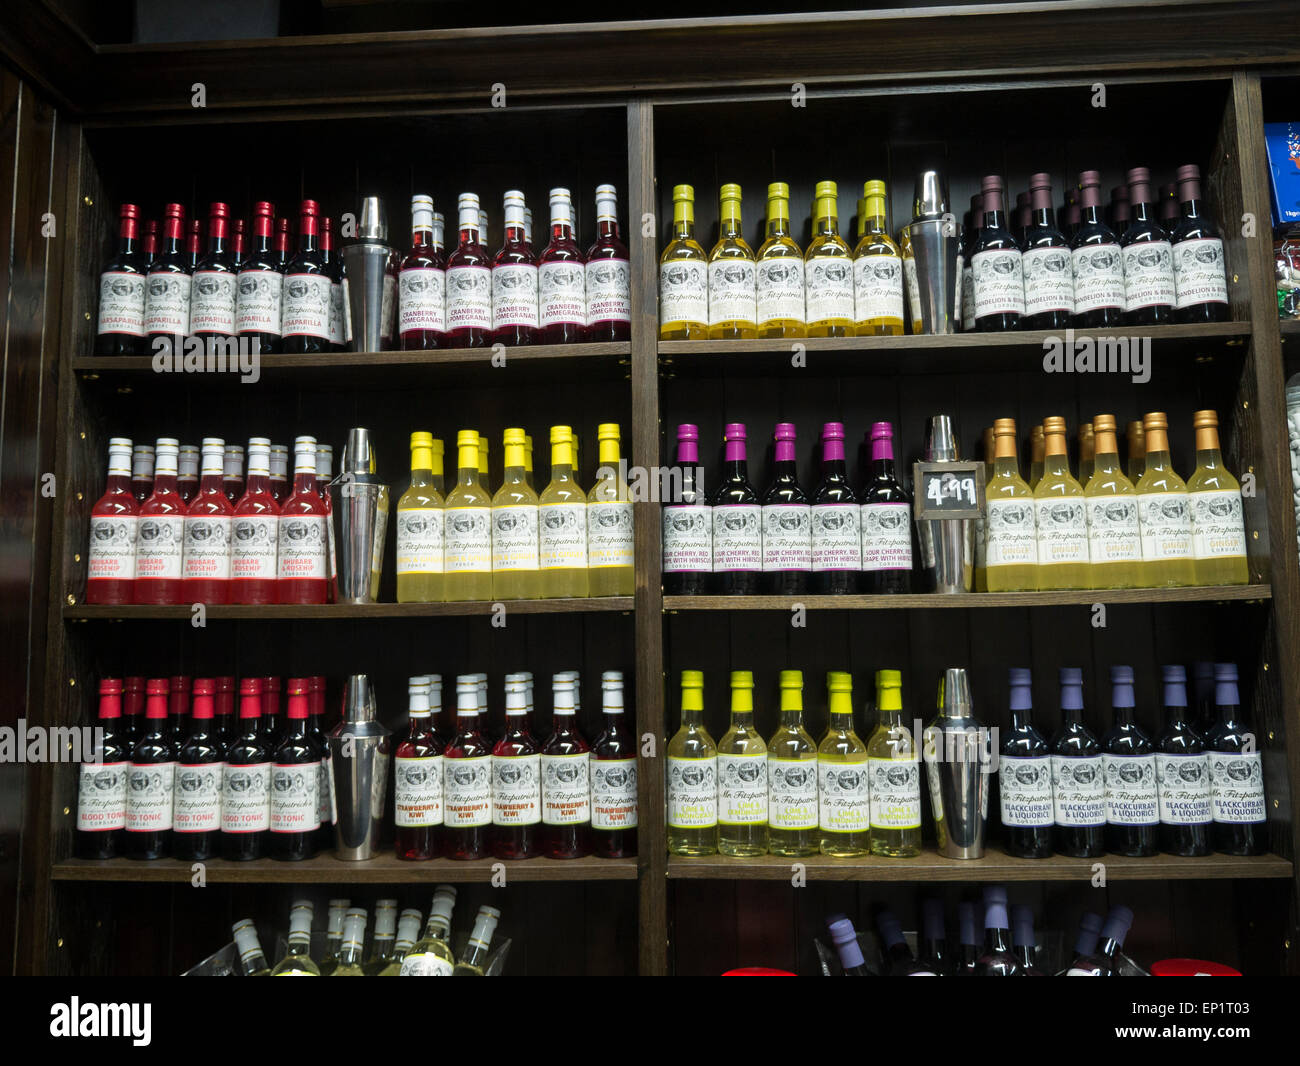 Señor Fitzpatricks Cordial no alcohólica en una tienda en Harrogate Foto de stock